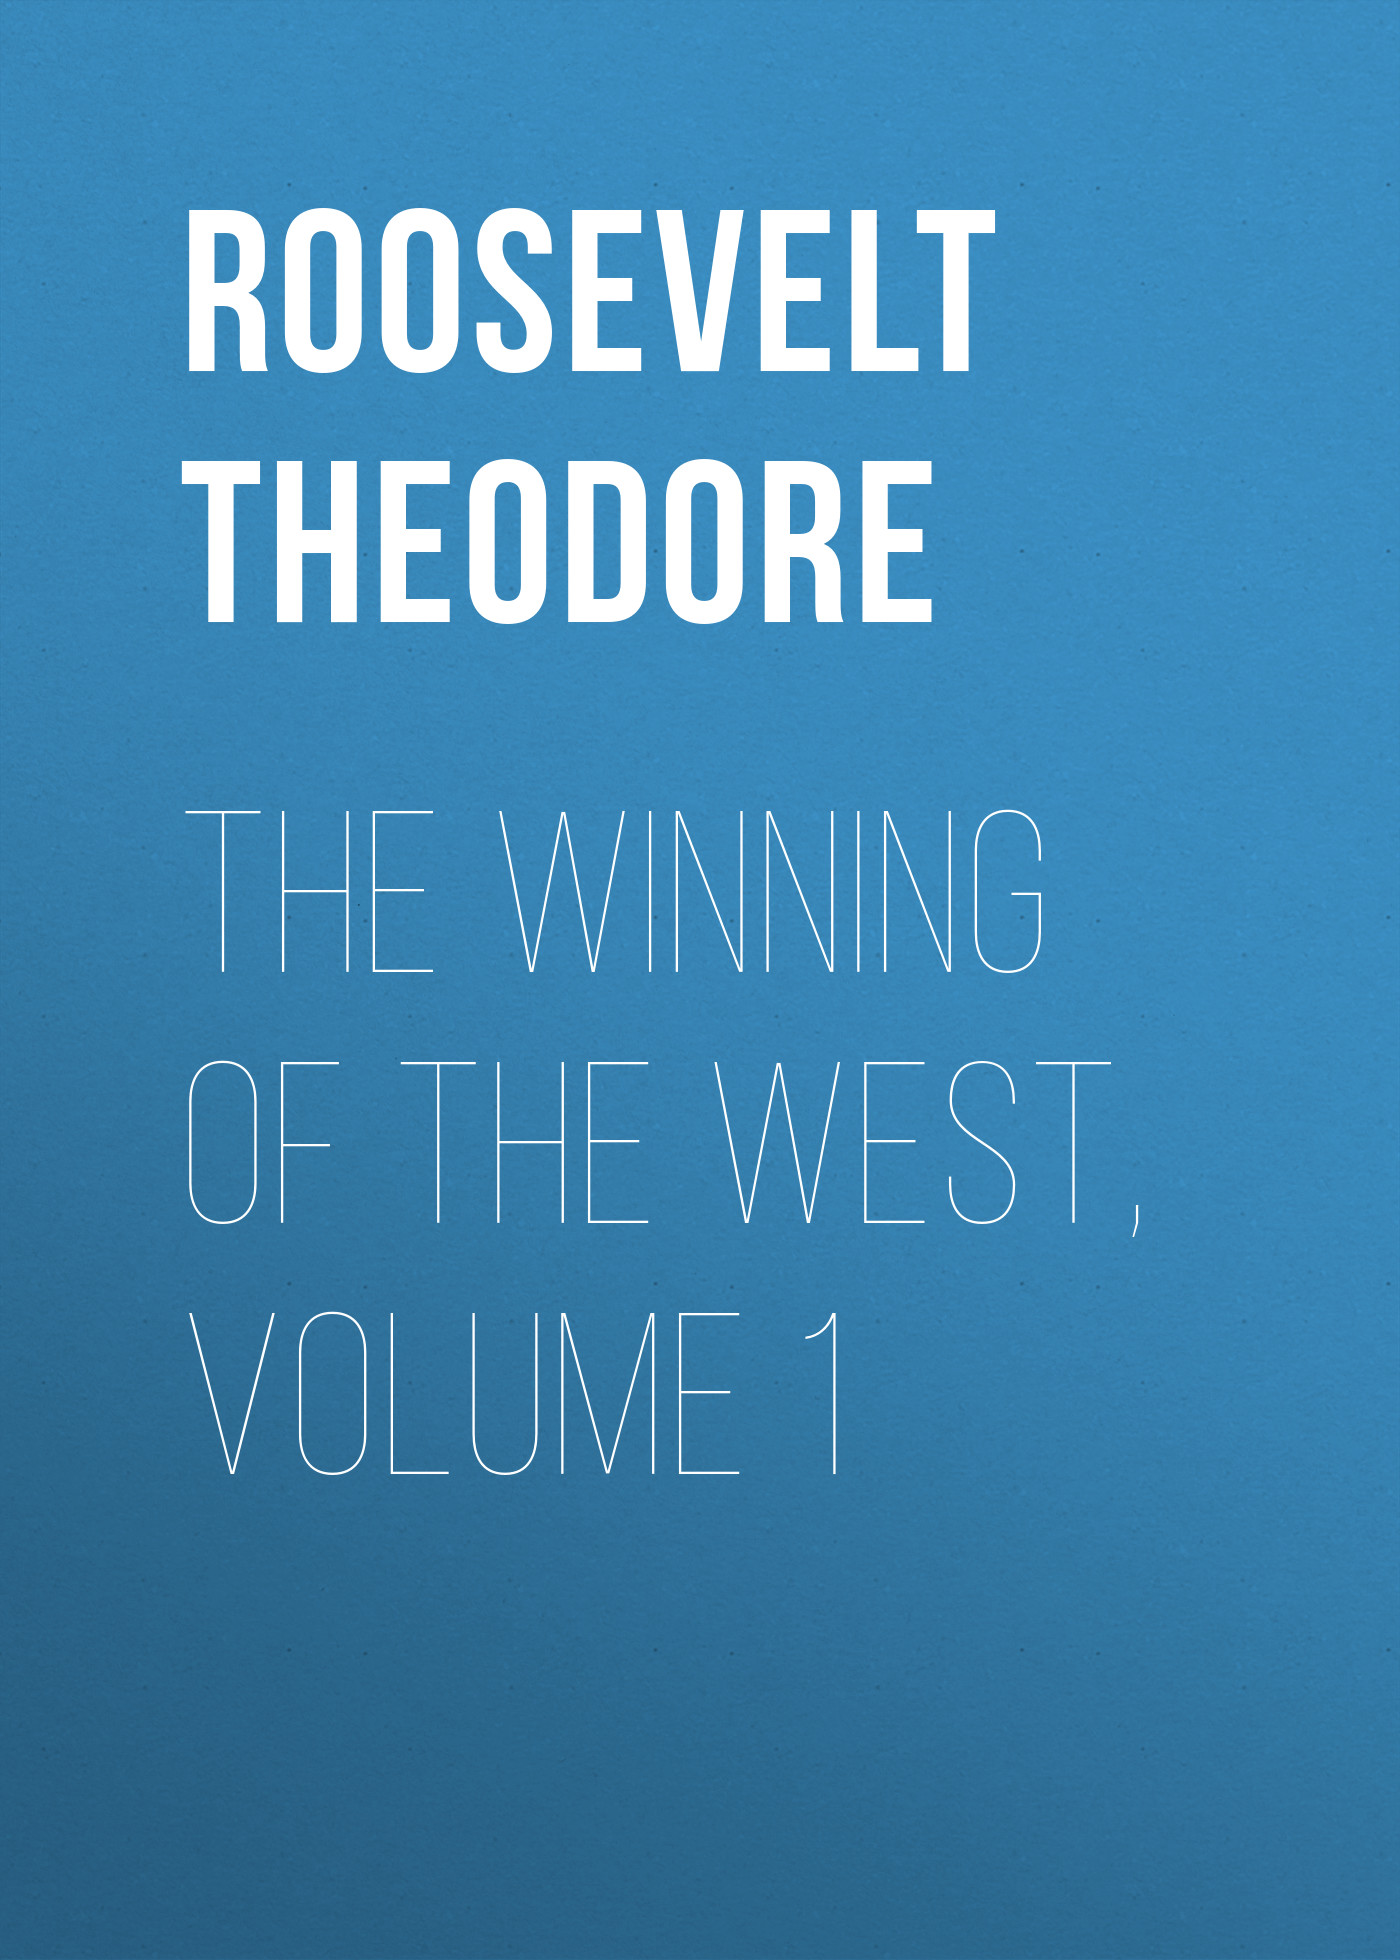 Книга The Winning of the West, Volume 1 из серии , созданная Theodore Roosevelt, может относится к жанру Зарубежная классика, История, Зарубежная образовательная литература, Зарубежная старинная литература. Стоимость электронной книги The Winning of the West, Volume 1 с идентификатором 36093933 составляет 0 руб.